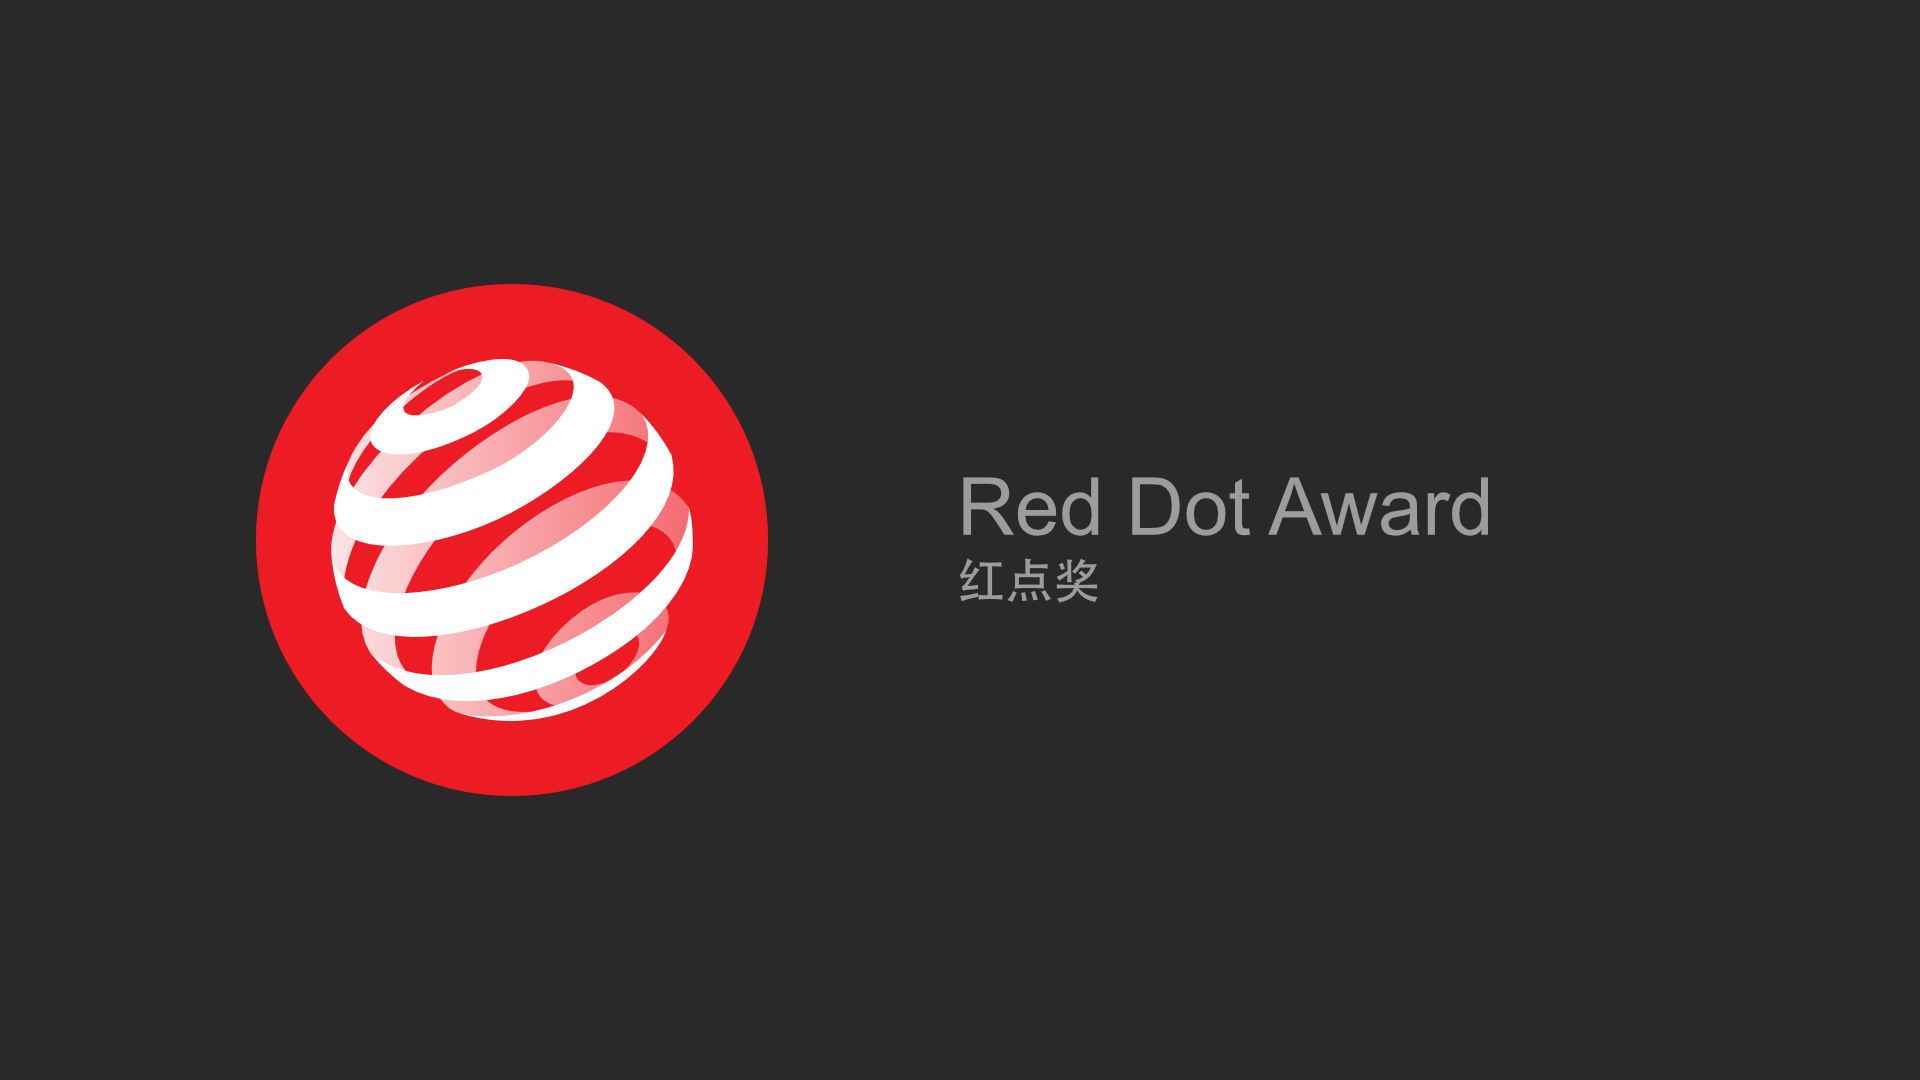 Red Dot Award | 红点奖.png